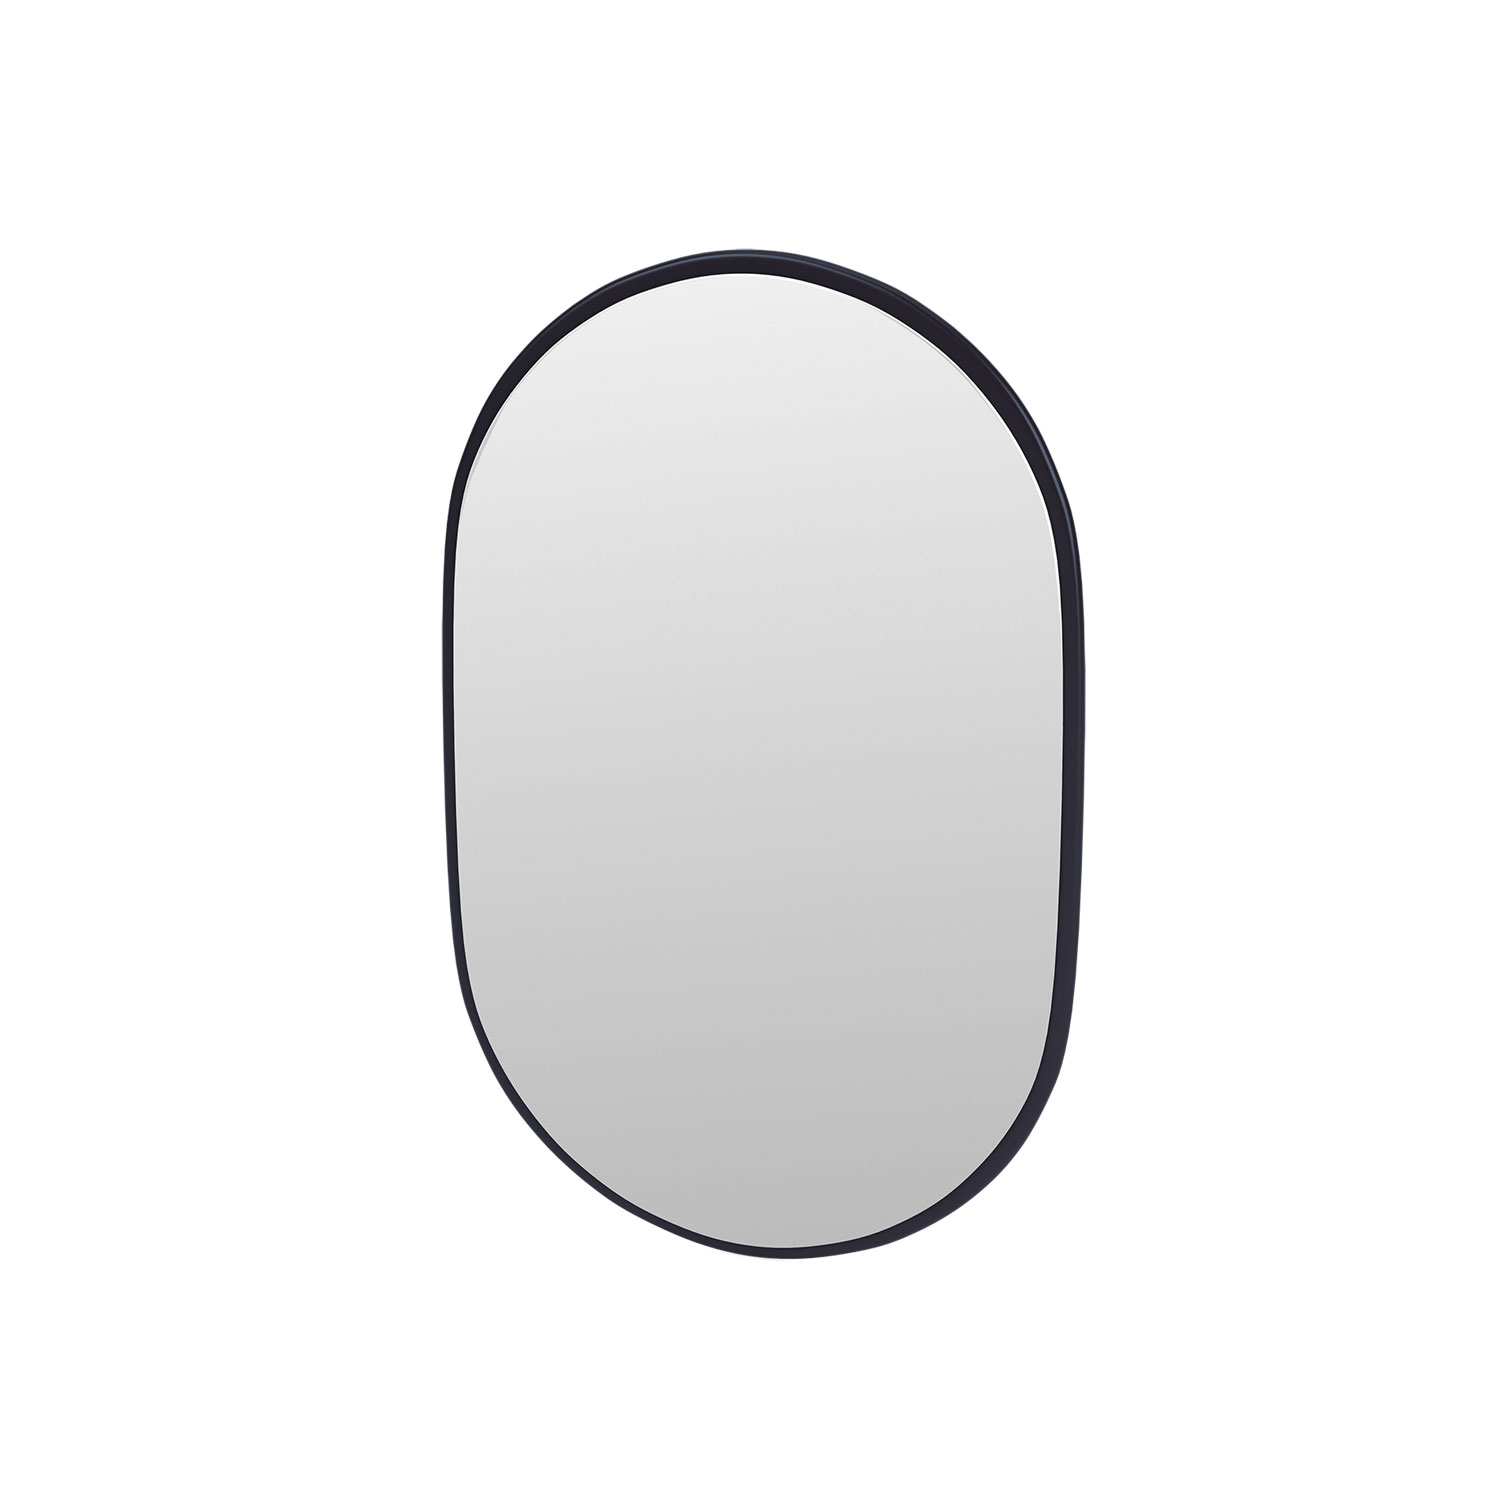 LOOK oval mirror, Shadow